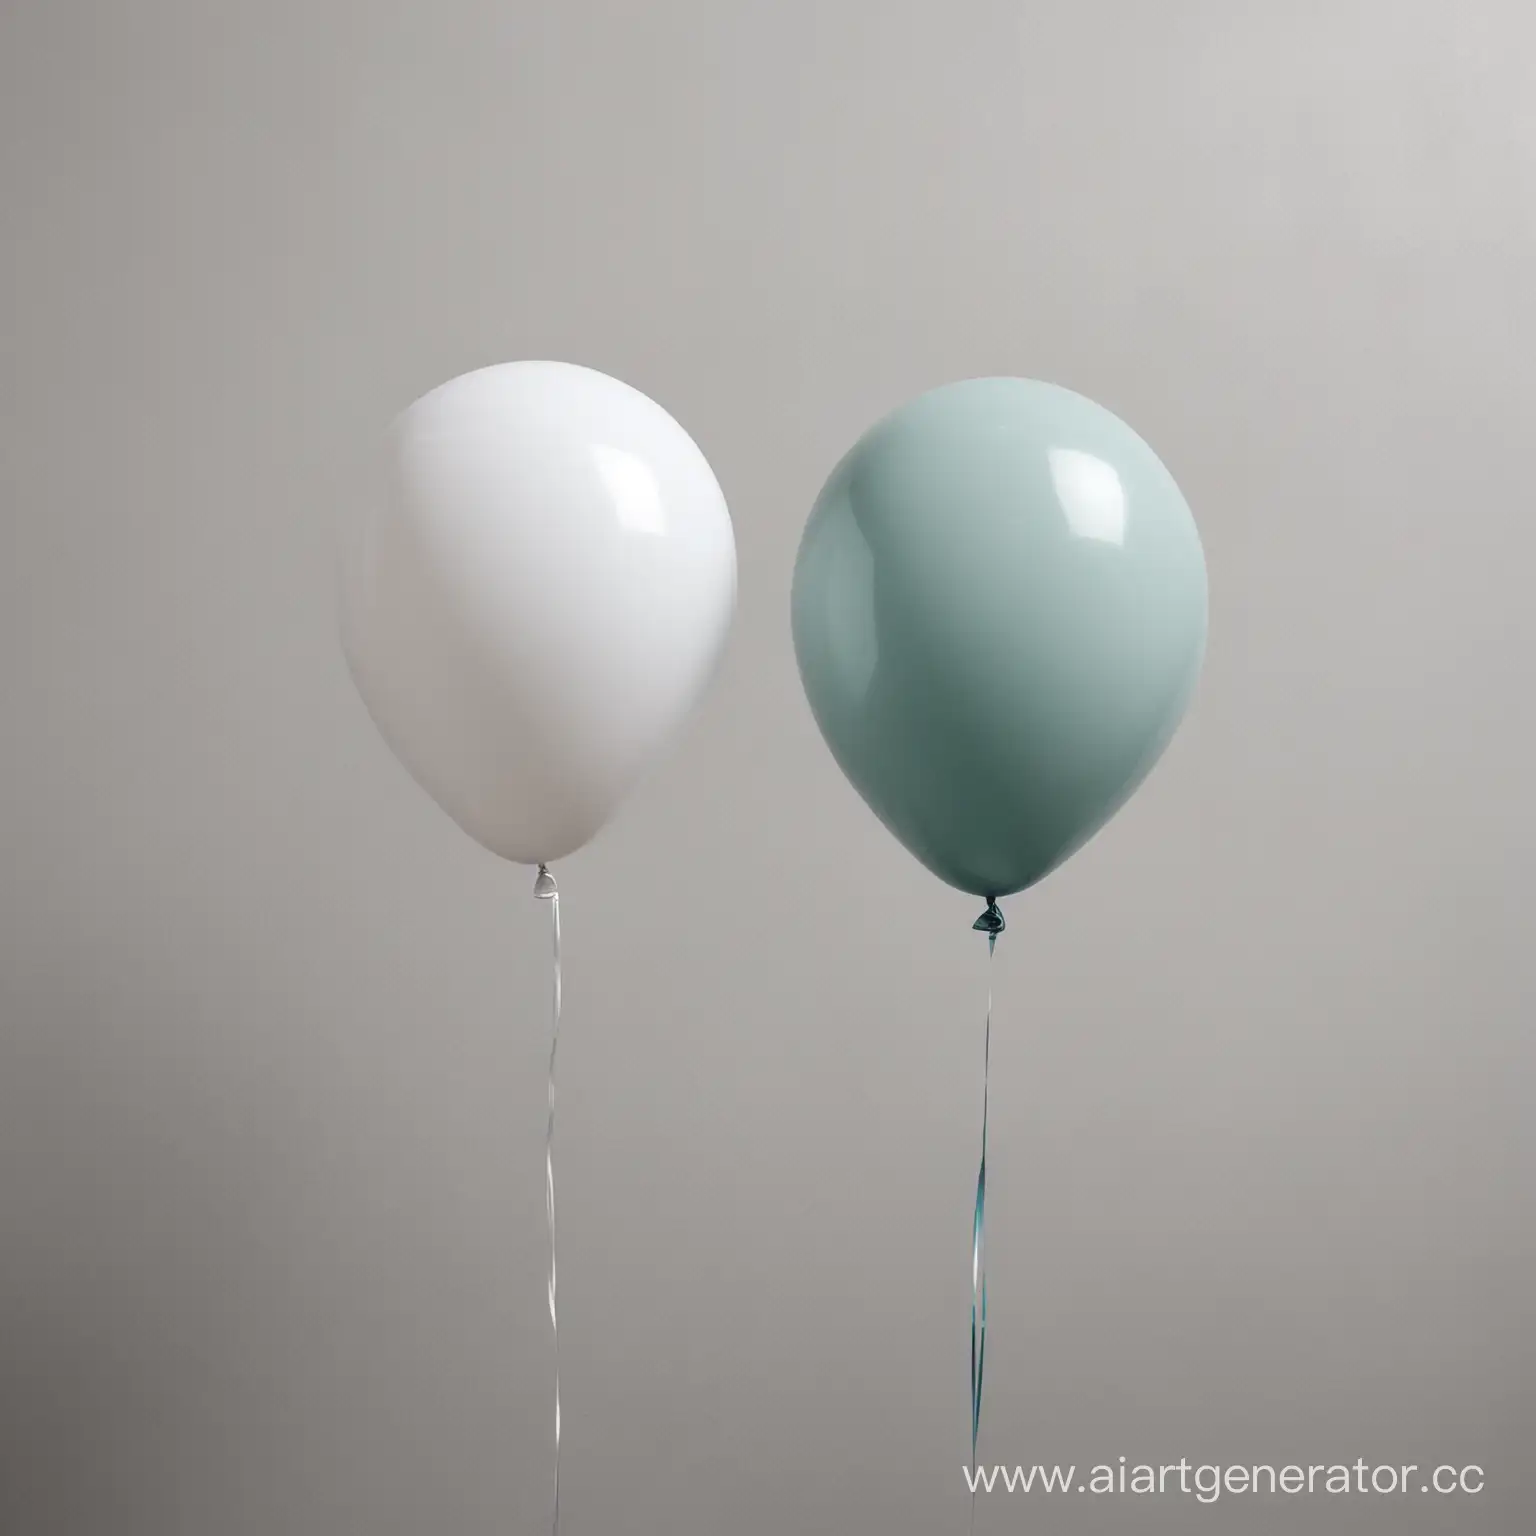 Два воздушных шарика рядом